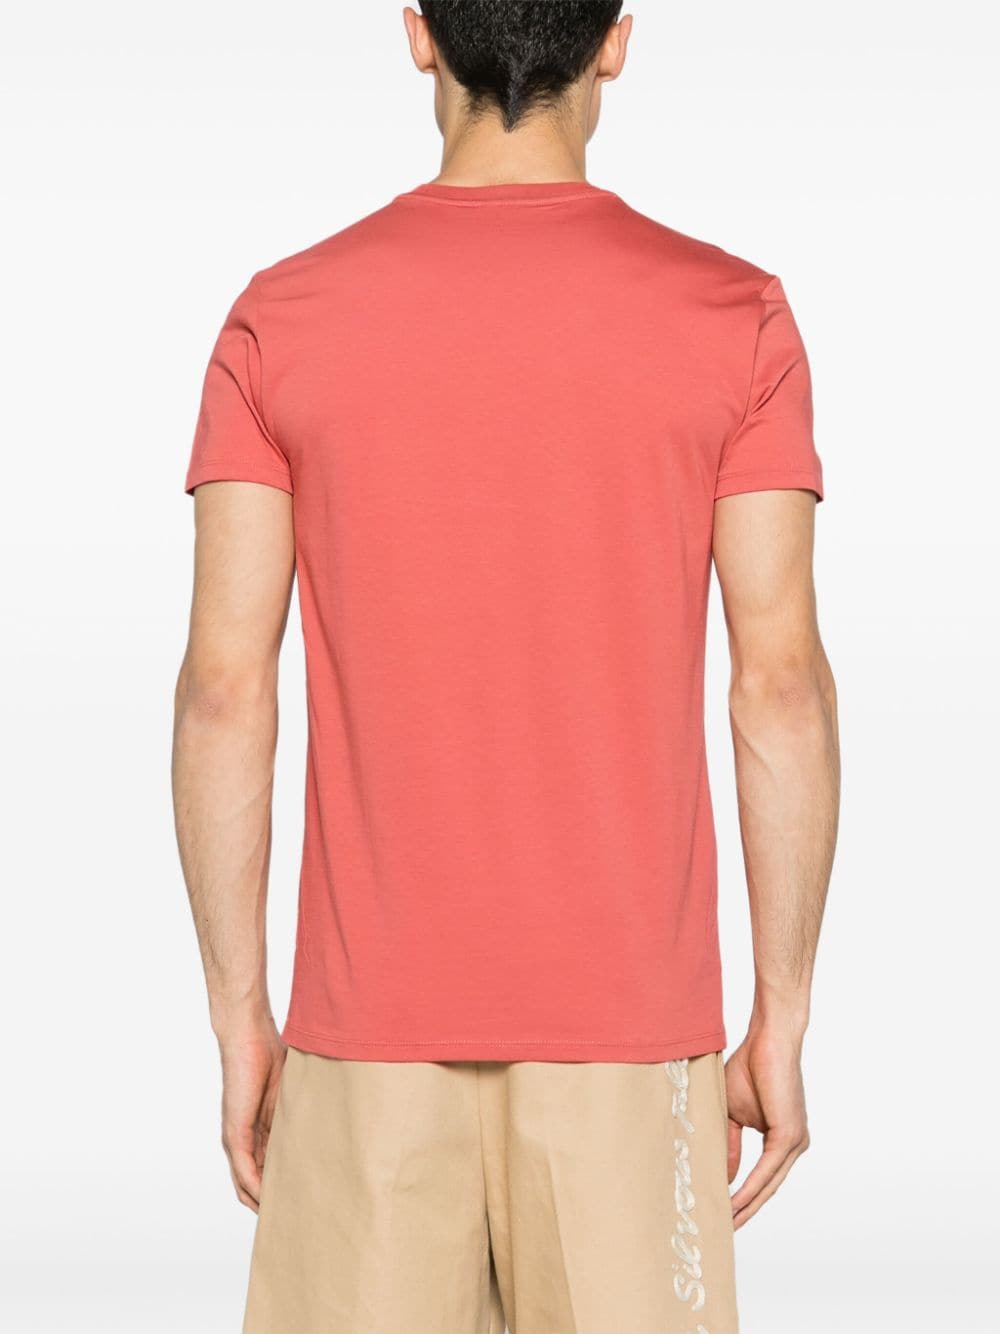 Basic coral t-shirt